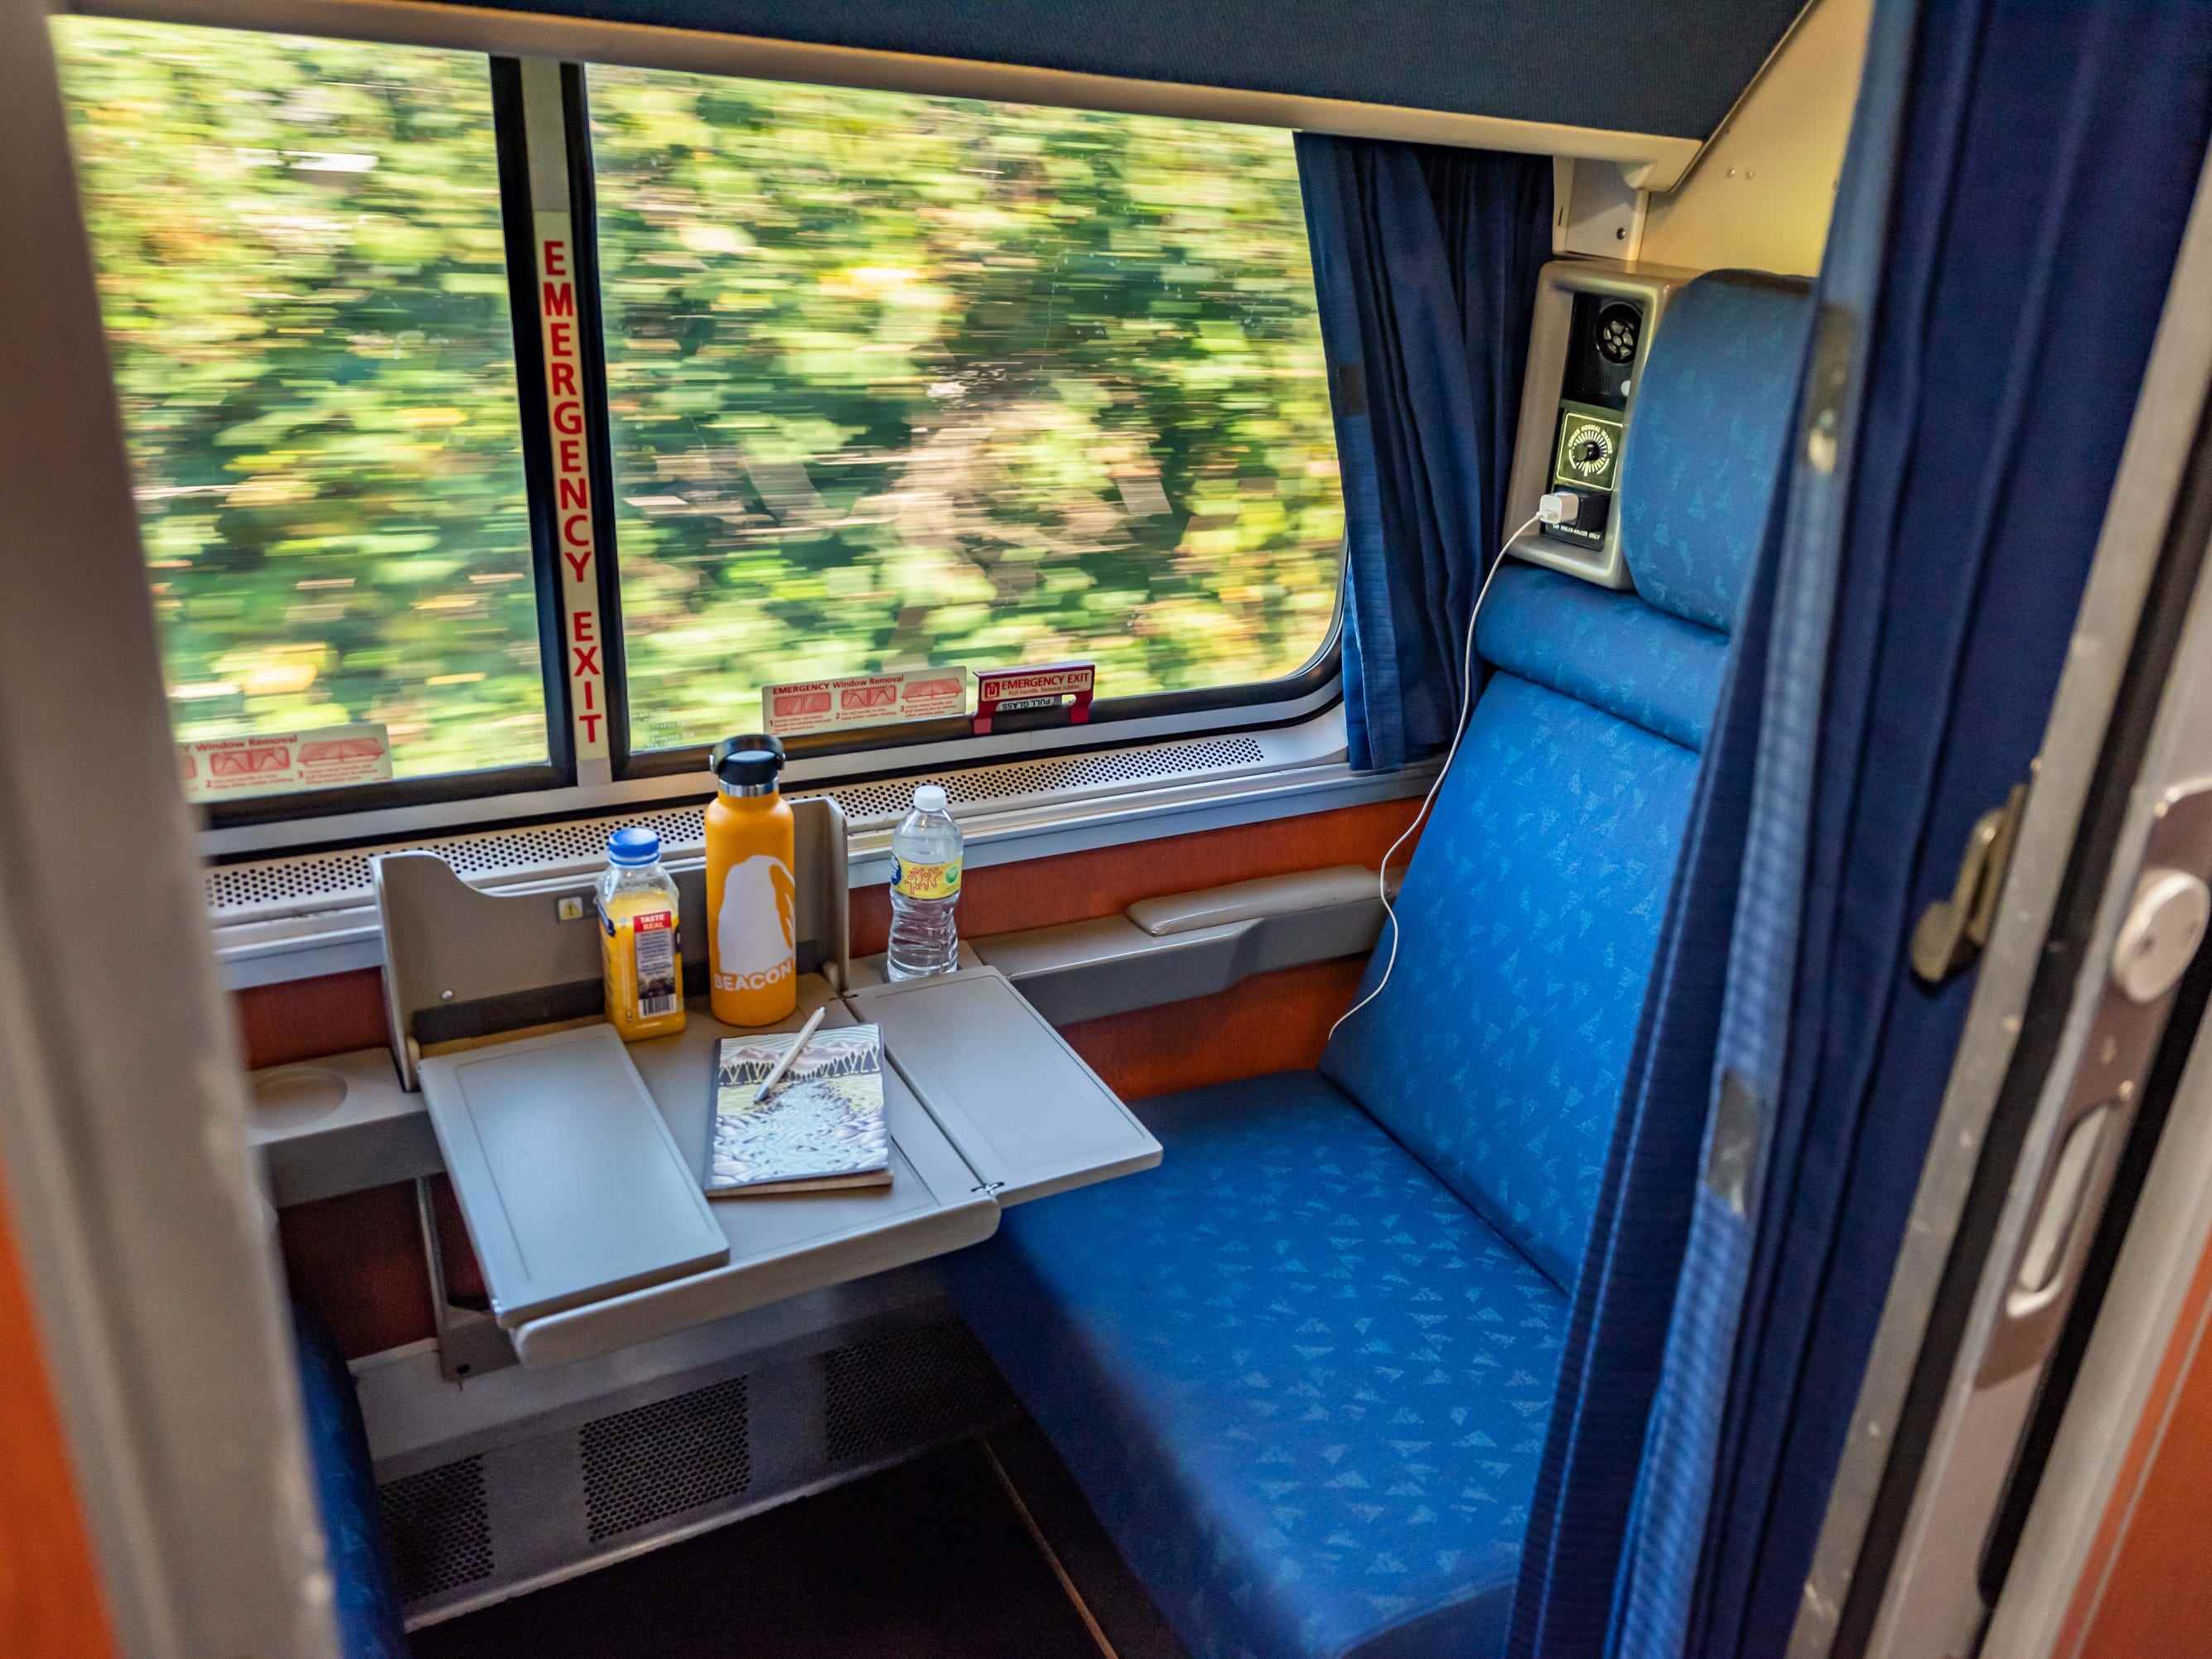 Waggon mit herausgezogenem Tablett und verschwommenen Bäumen im Fenster, während der Zug vorbeifährt